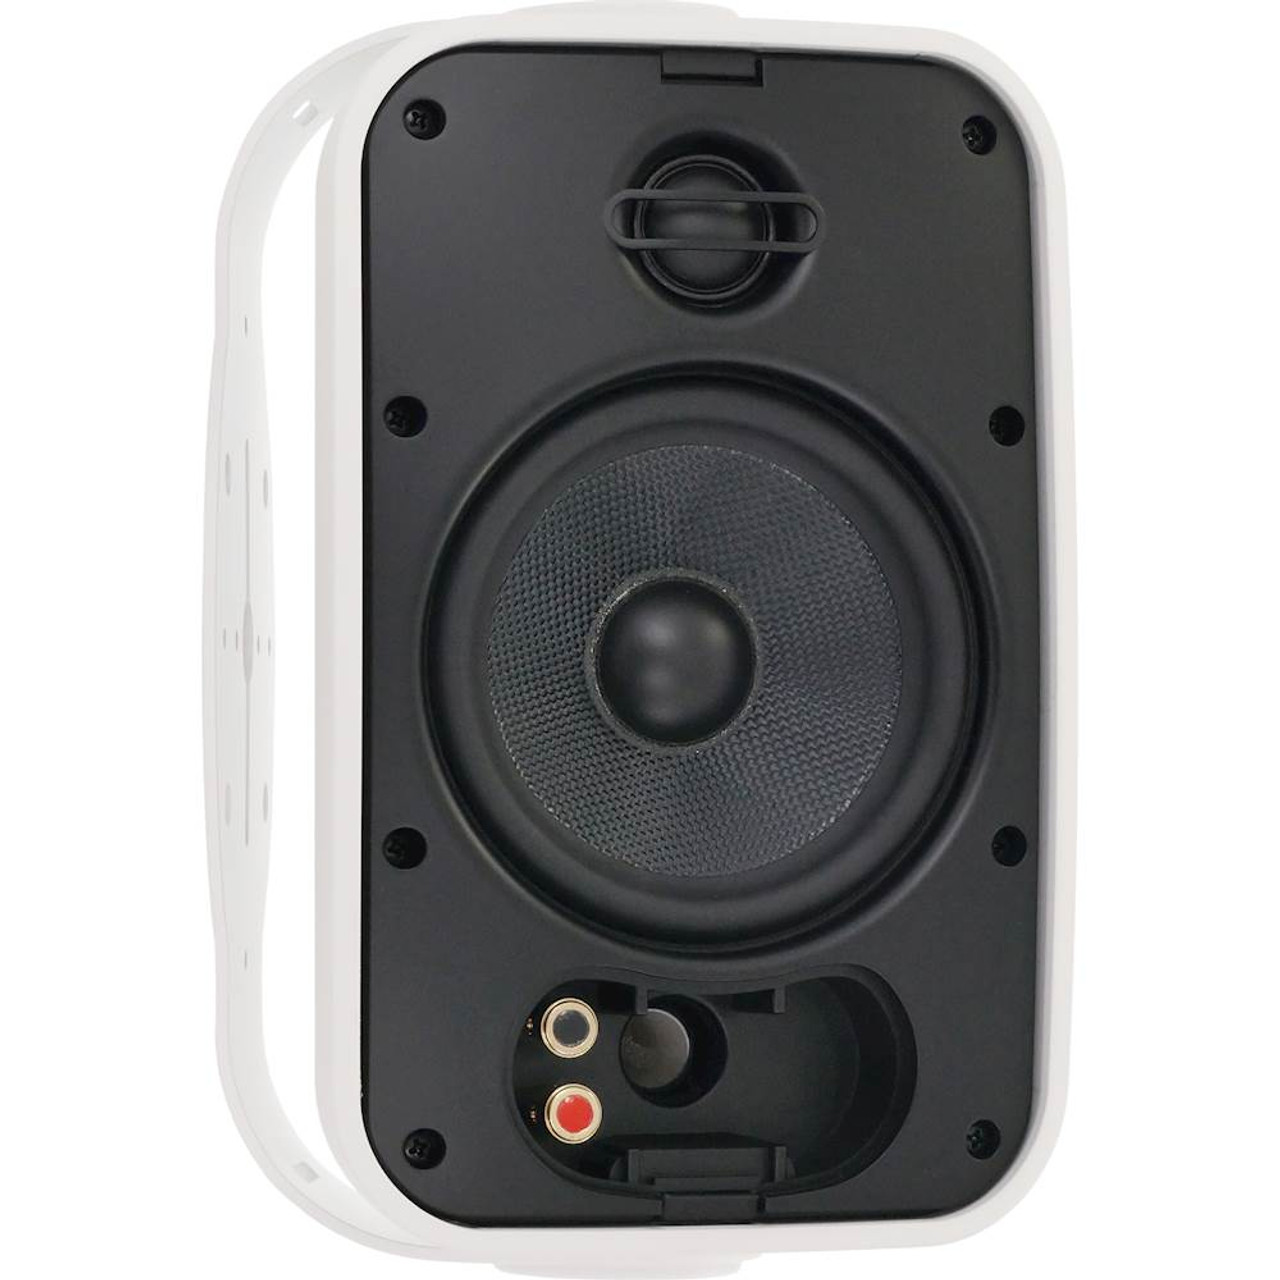 Sonance - Mariner 5-1/4" 2-Way Outdoor Speakers (Pair) - White